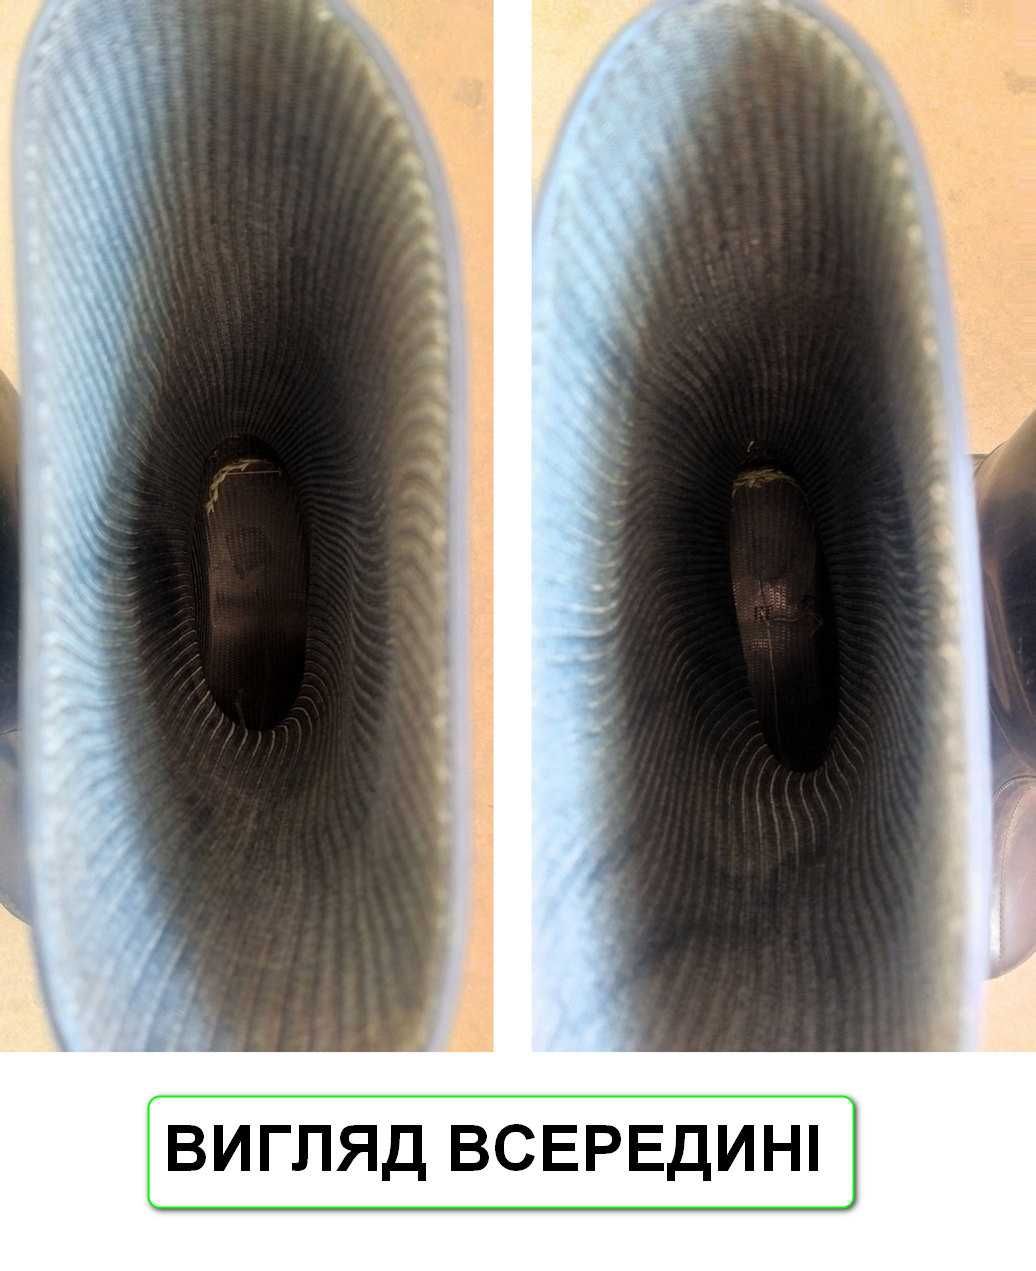 Чоботи гумові жіночі 39розмір Realpaks(Україна)потребують реставрації